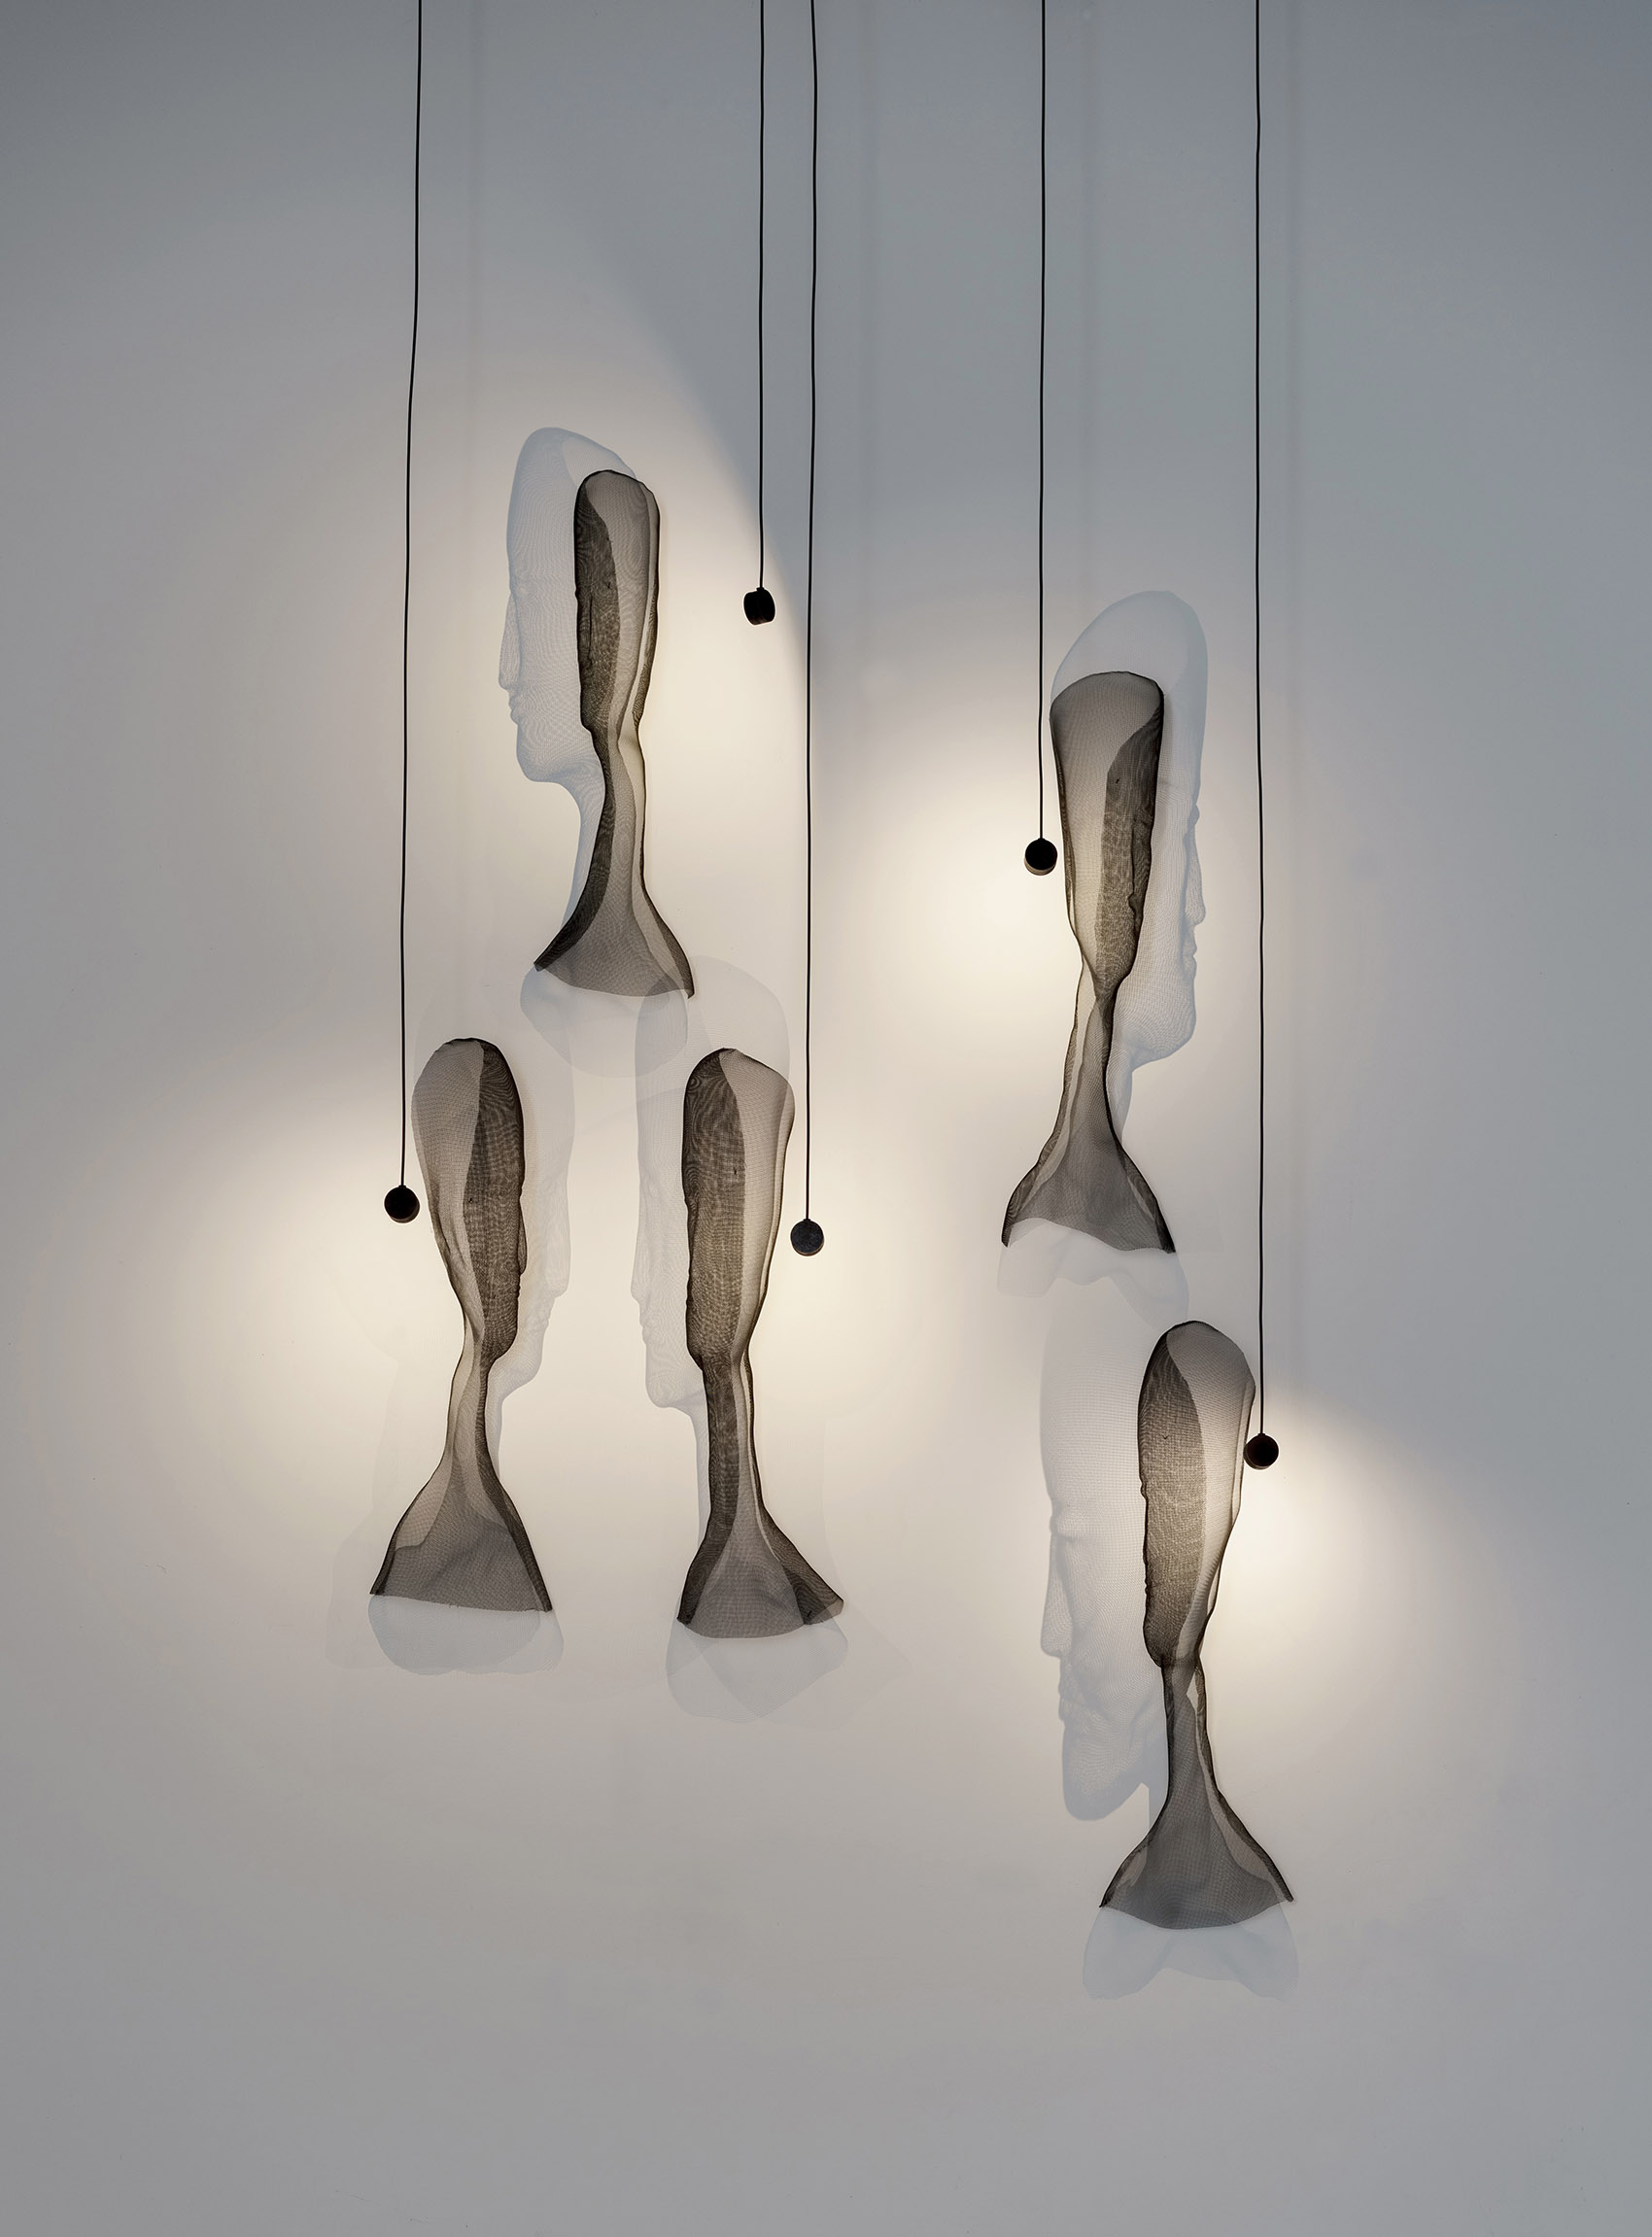 情感之光西班牙灯具设计师的 7 个系列作品 / arturo lvarez